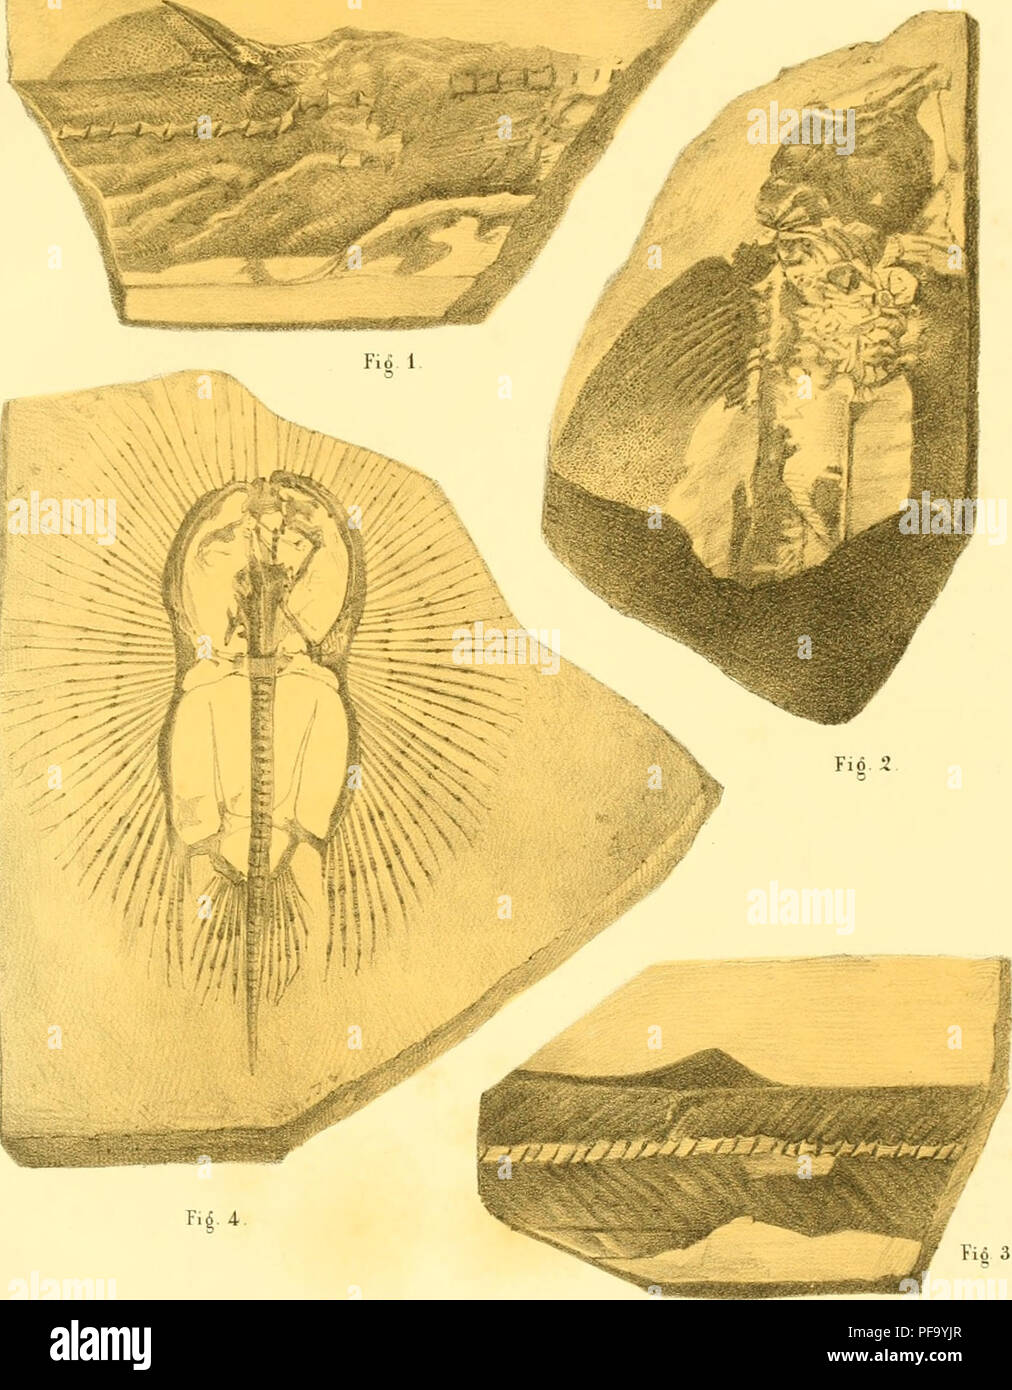 . Descripción de quelques poissons fossiles du Mont Liban. Poissons dii Liban. PI 10. Tio 3 Me^a^^- FTC/TZizâ:^^/.e/r'é^ ^^./g^tScf/rrti^tîffa'Ti^fi. Fiô. 1.2. 3. Spinax primae^IIS. Fiô. 4. Cyclobatis oligodactylus.. Por favor tenga en cuenta que estas imágenes son extraídas de la página escaneada imágenes que podrían haber sido mejoradas digitalmente para mejorar la legibilidad, la coloración y el aspecto de estas ilustraciones pueden no parecerse perfectamente a la obra original. Pictet, Fran©ois Jules, 1809-1872. G©n©·ve Foto de stock